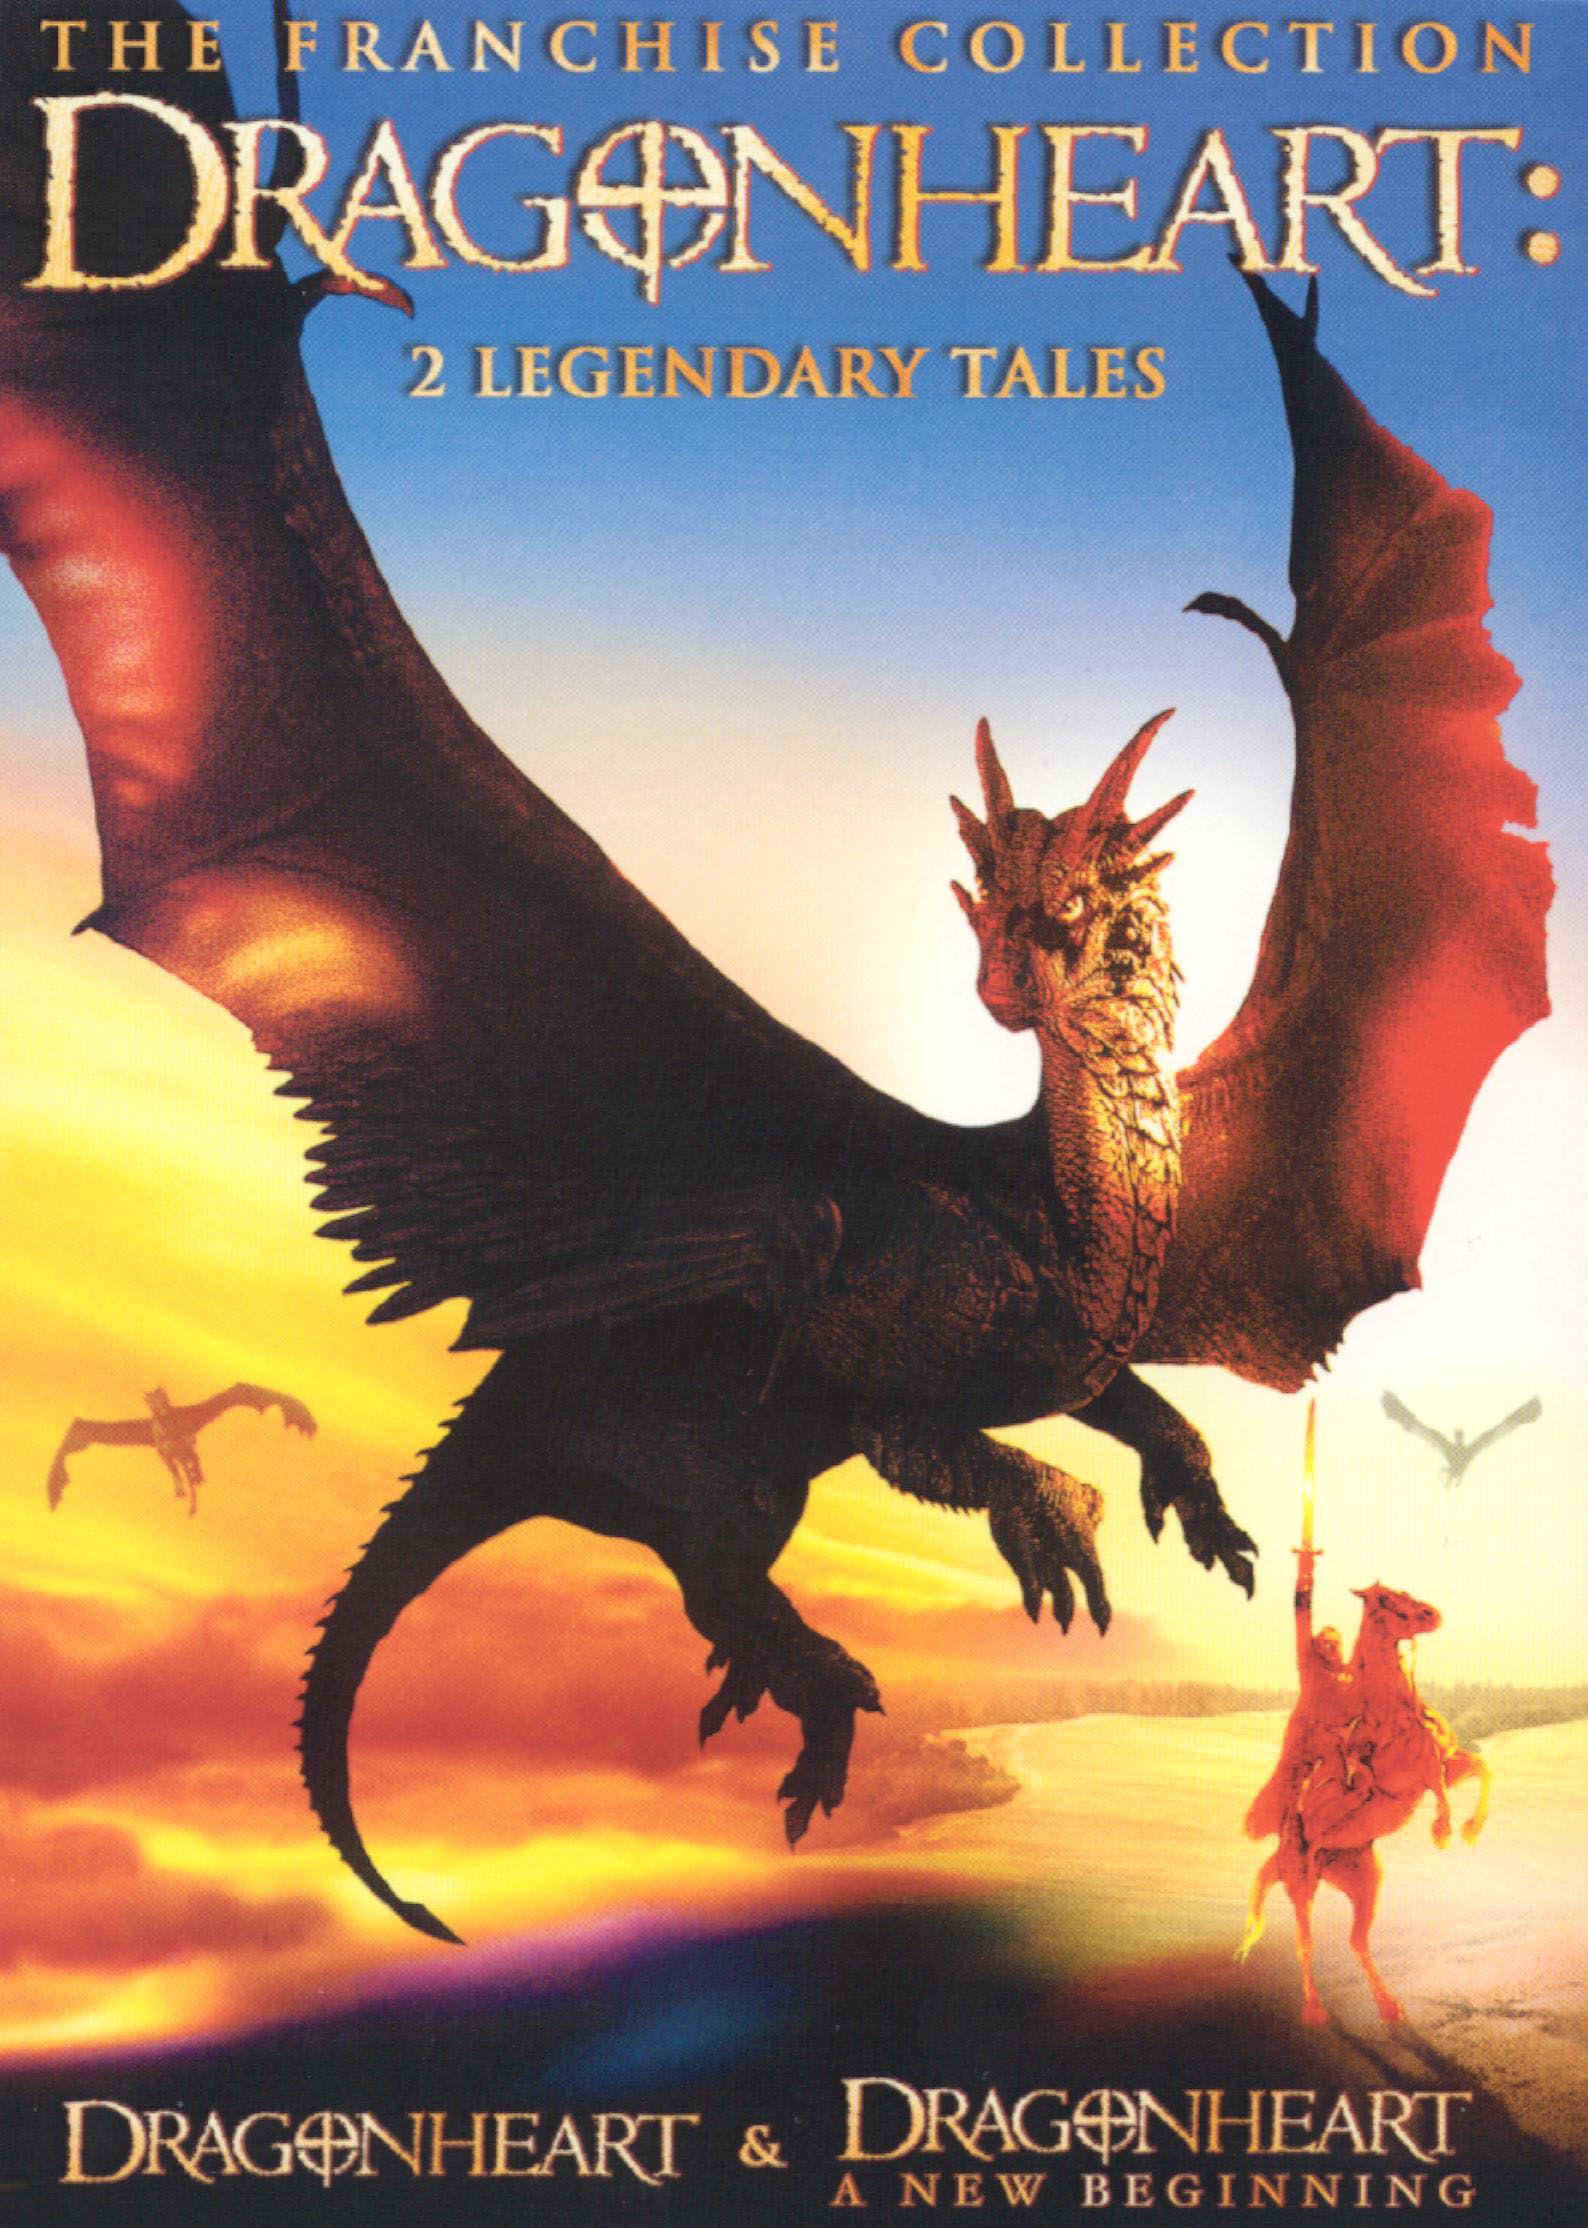 Dragonheart 2 Legendary Tales DVD - Best Buy.